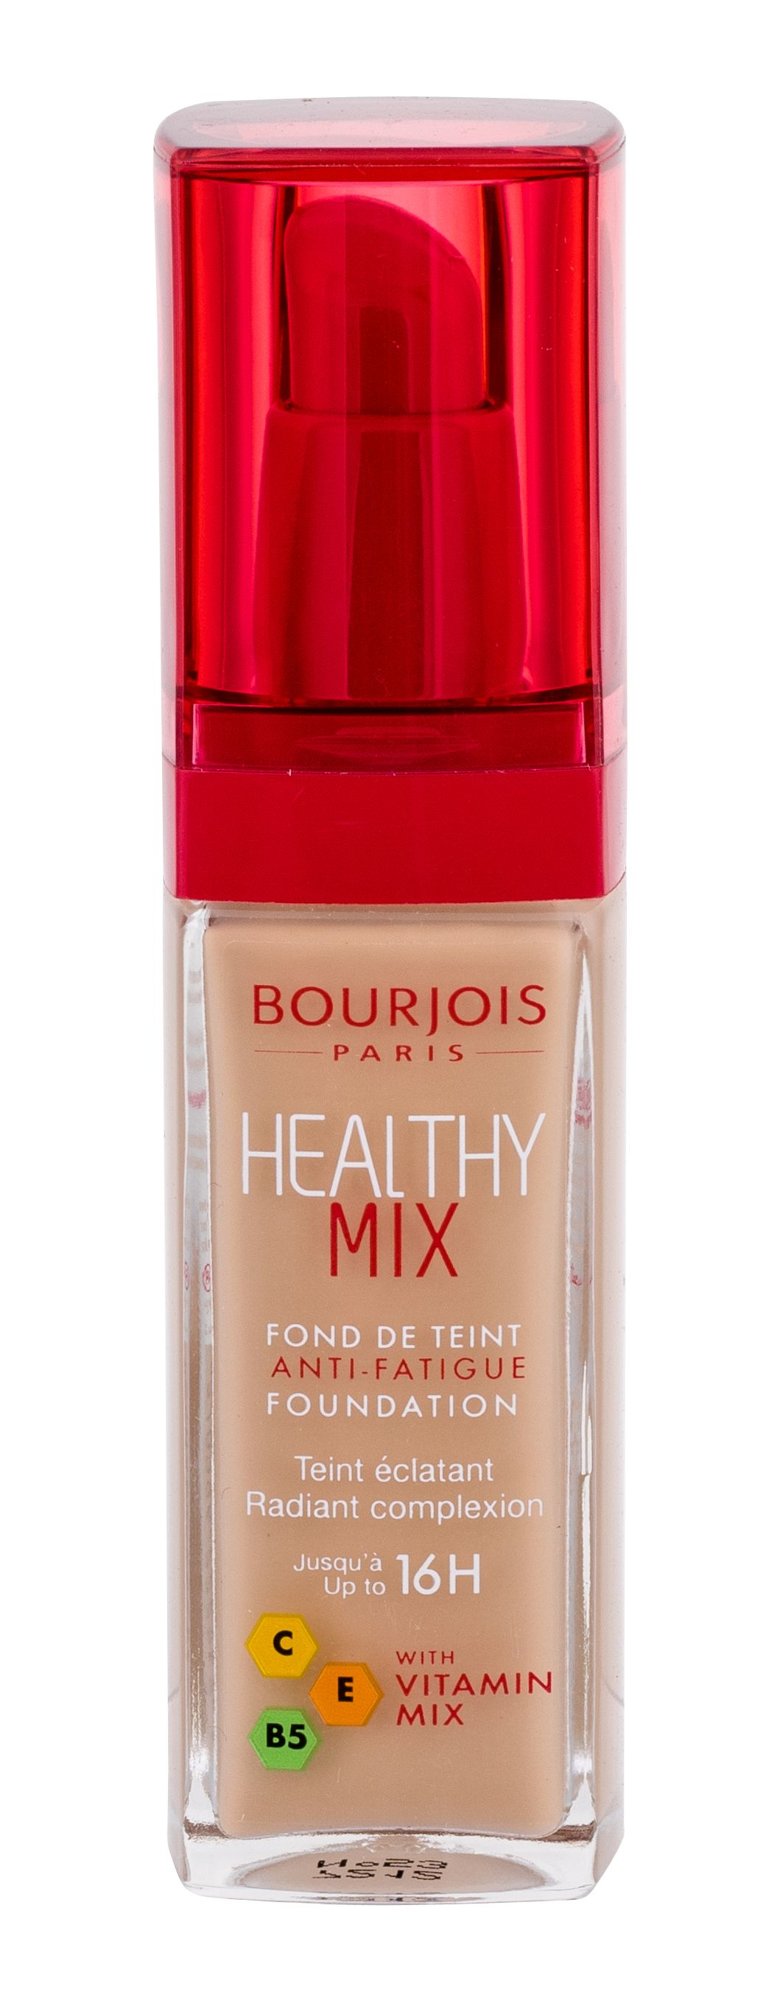 BOURJOIS Paris Healthy Mix Anti-Fatigue Foundation kosmetika moterims